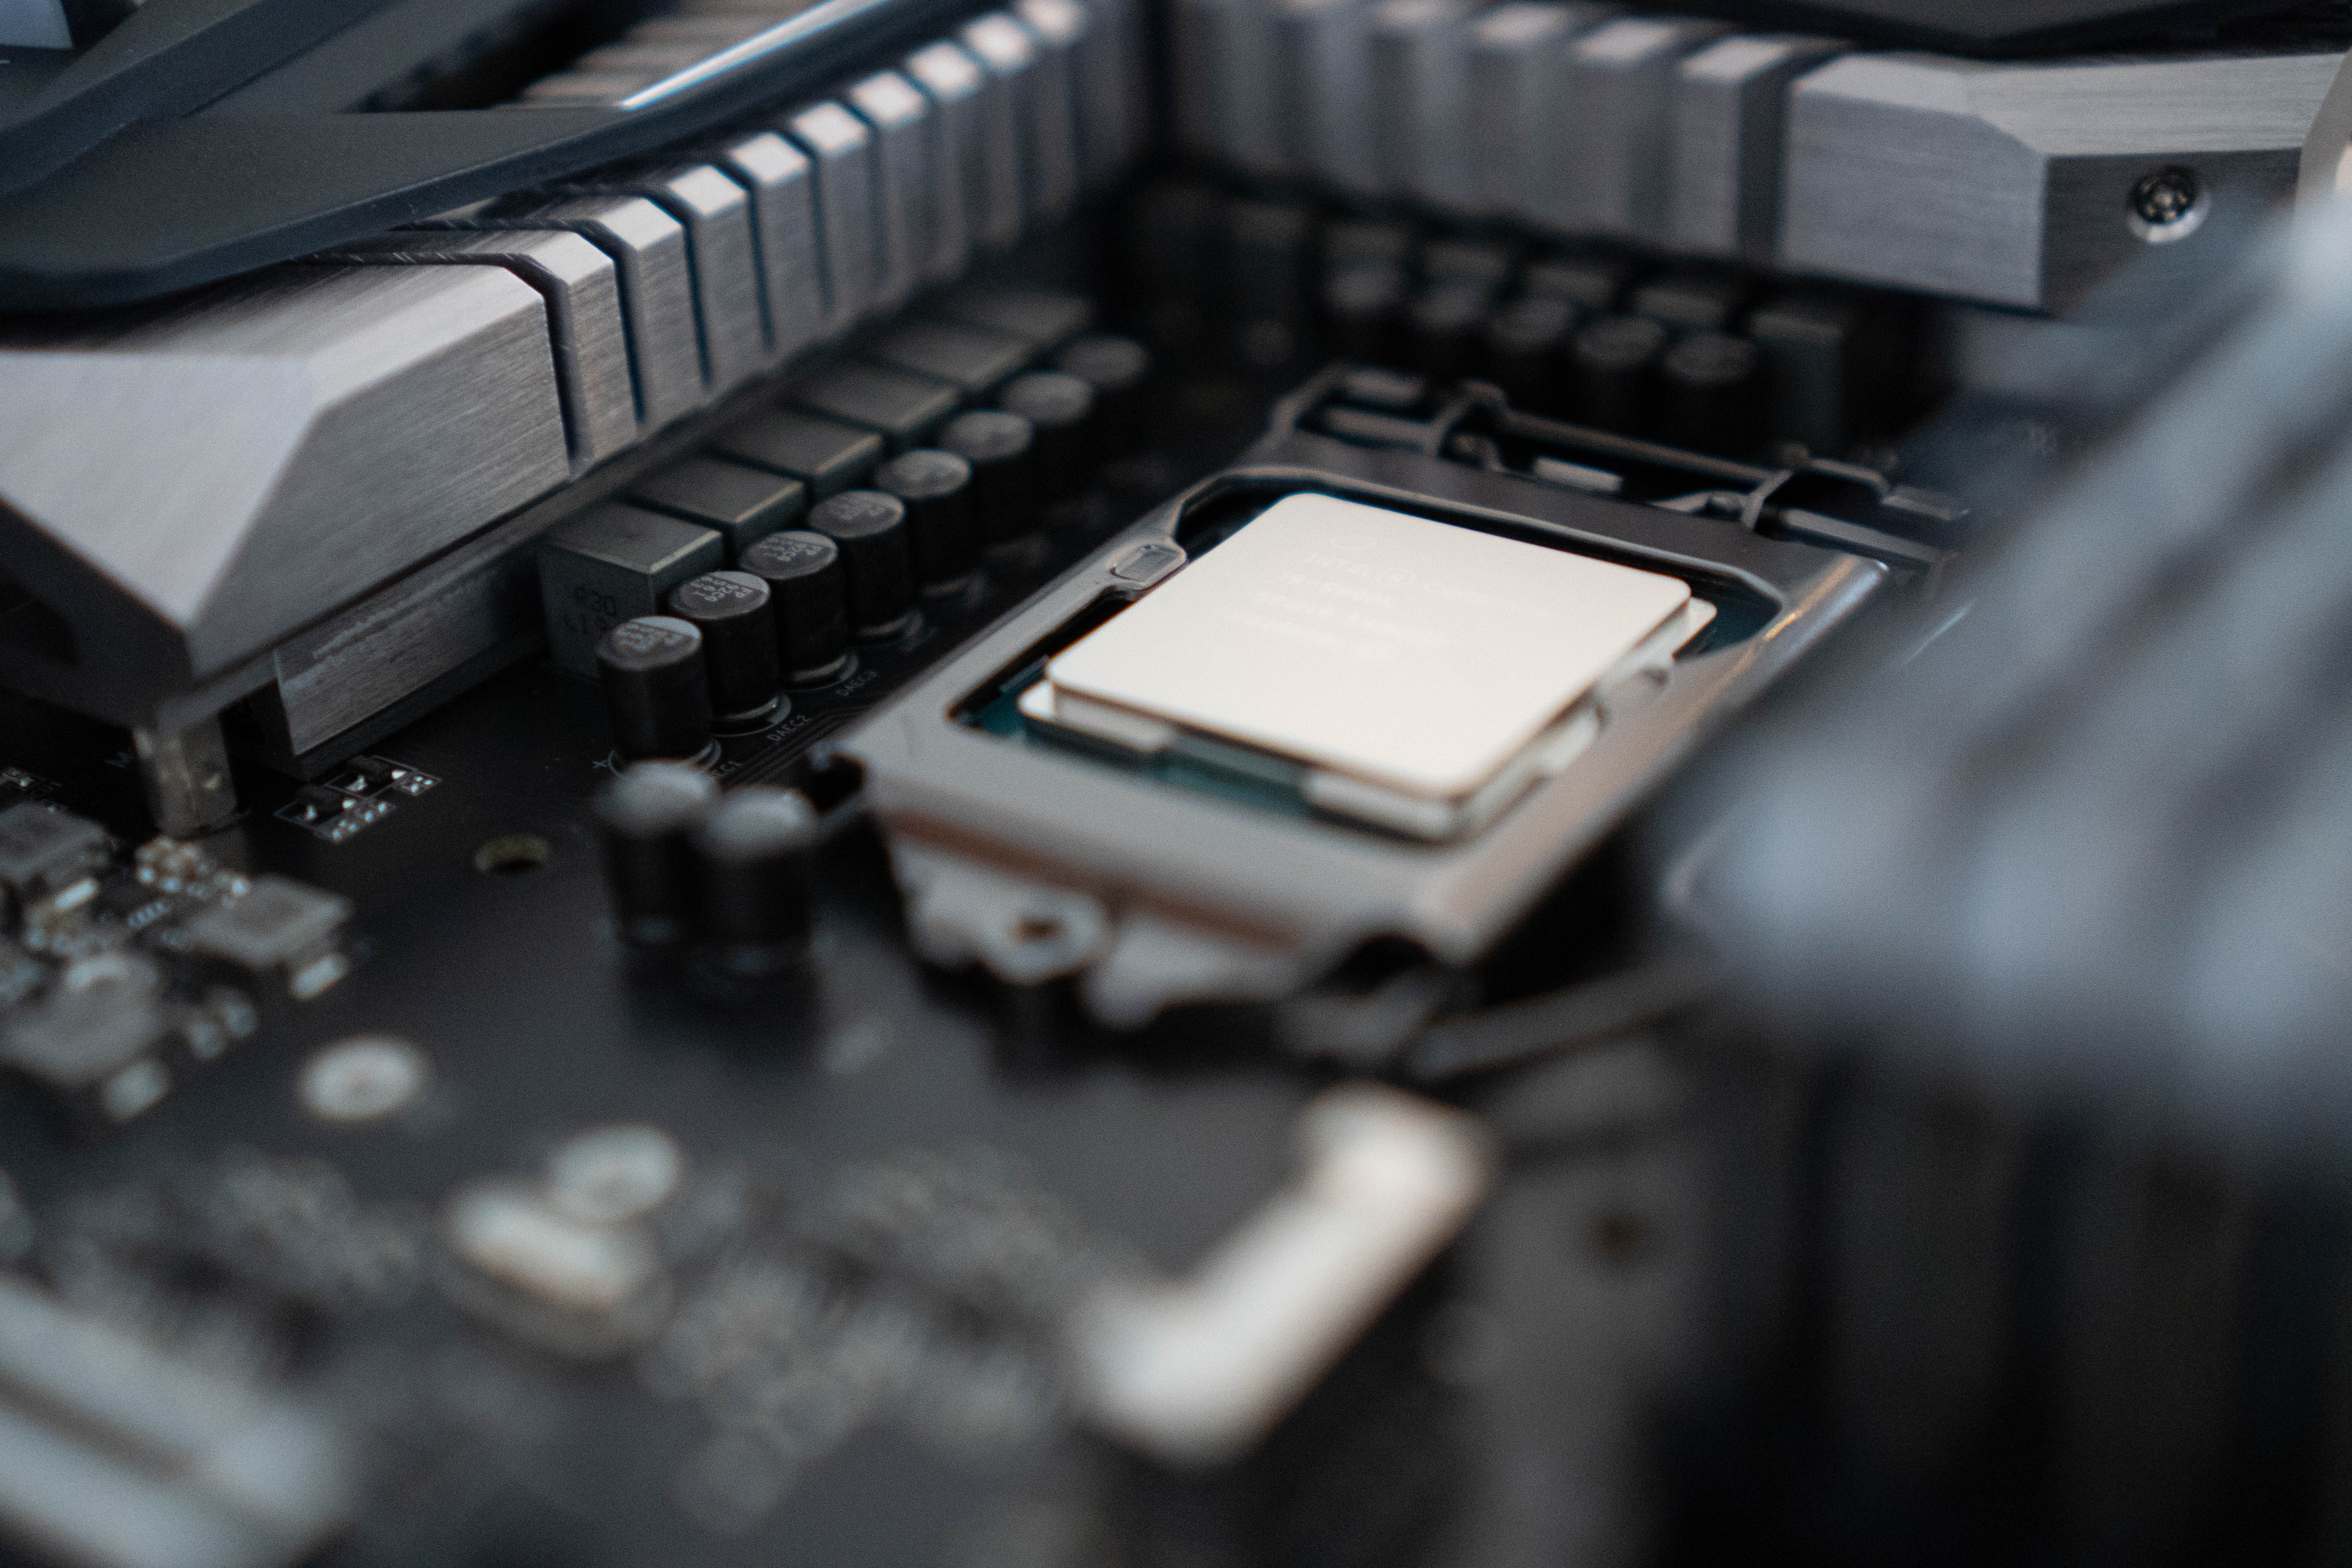 Intel met fin à son assurance PTPP, qui couvrait les dommages liés à l'overclocking